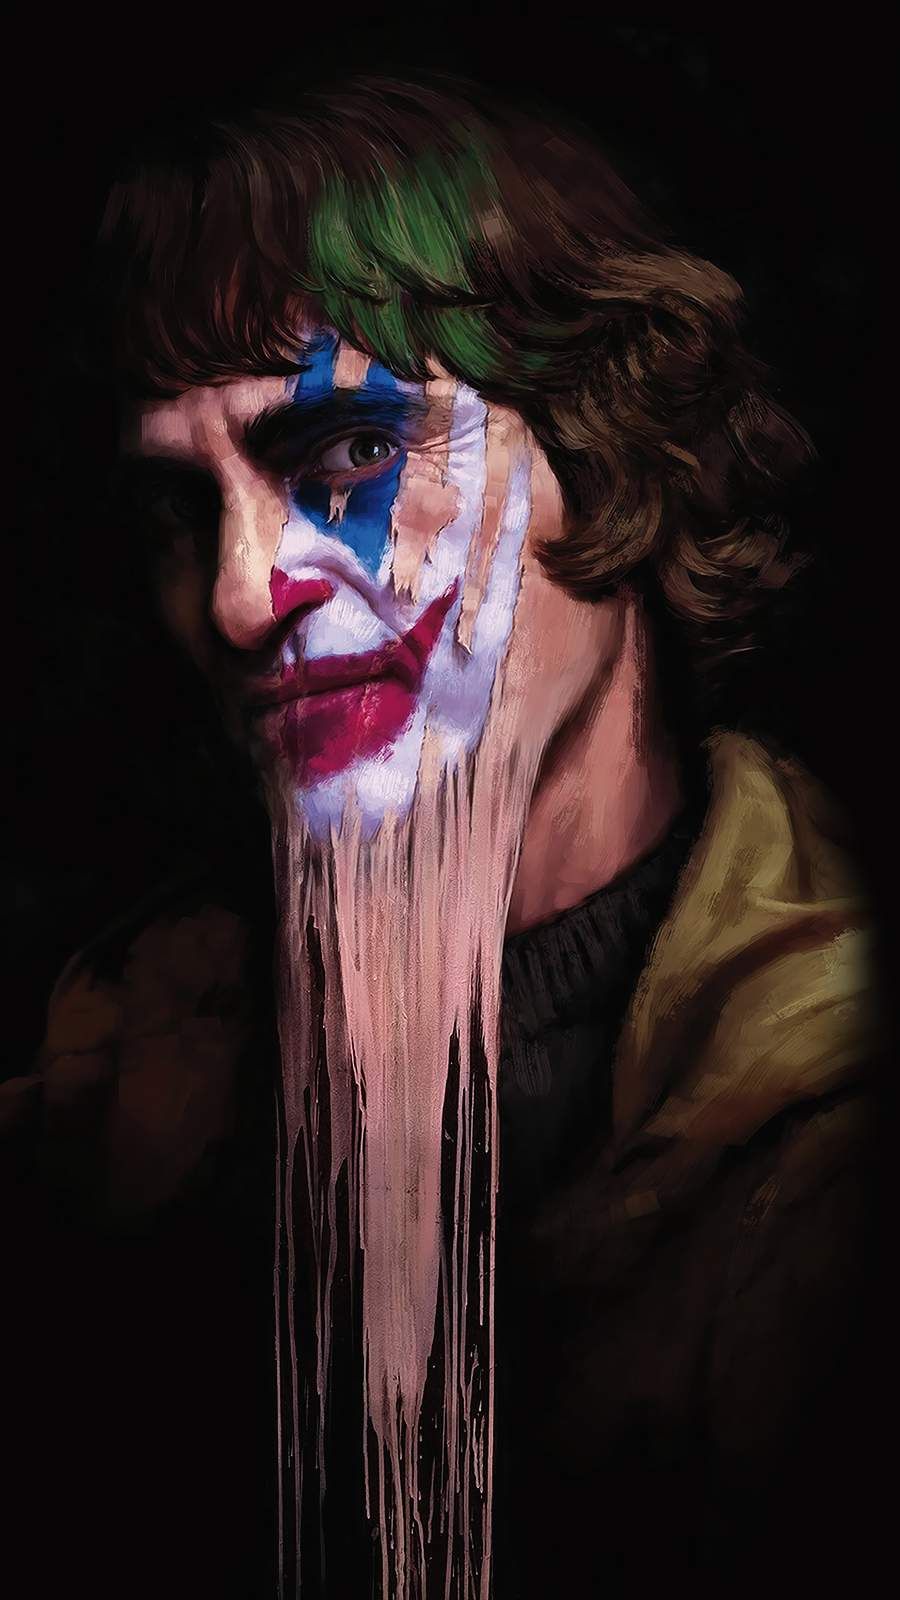 Joker Face Art IPhone Wallpaper #wallpaper #coolphonewallpaper